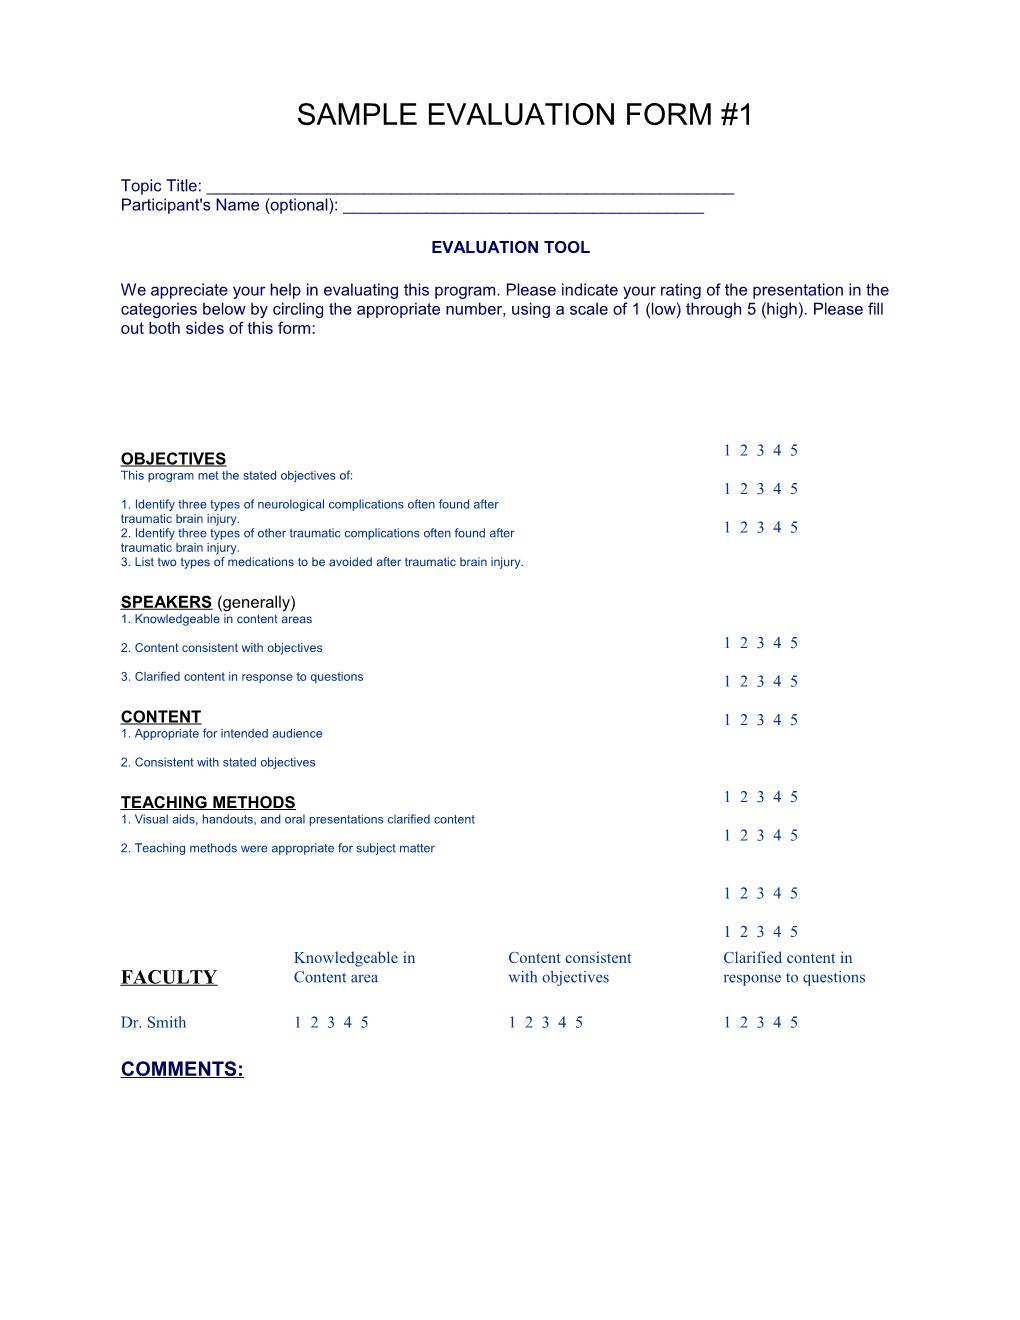 Sample Evaluation Form #1